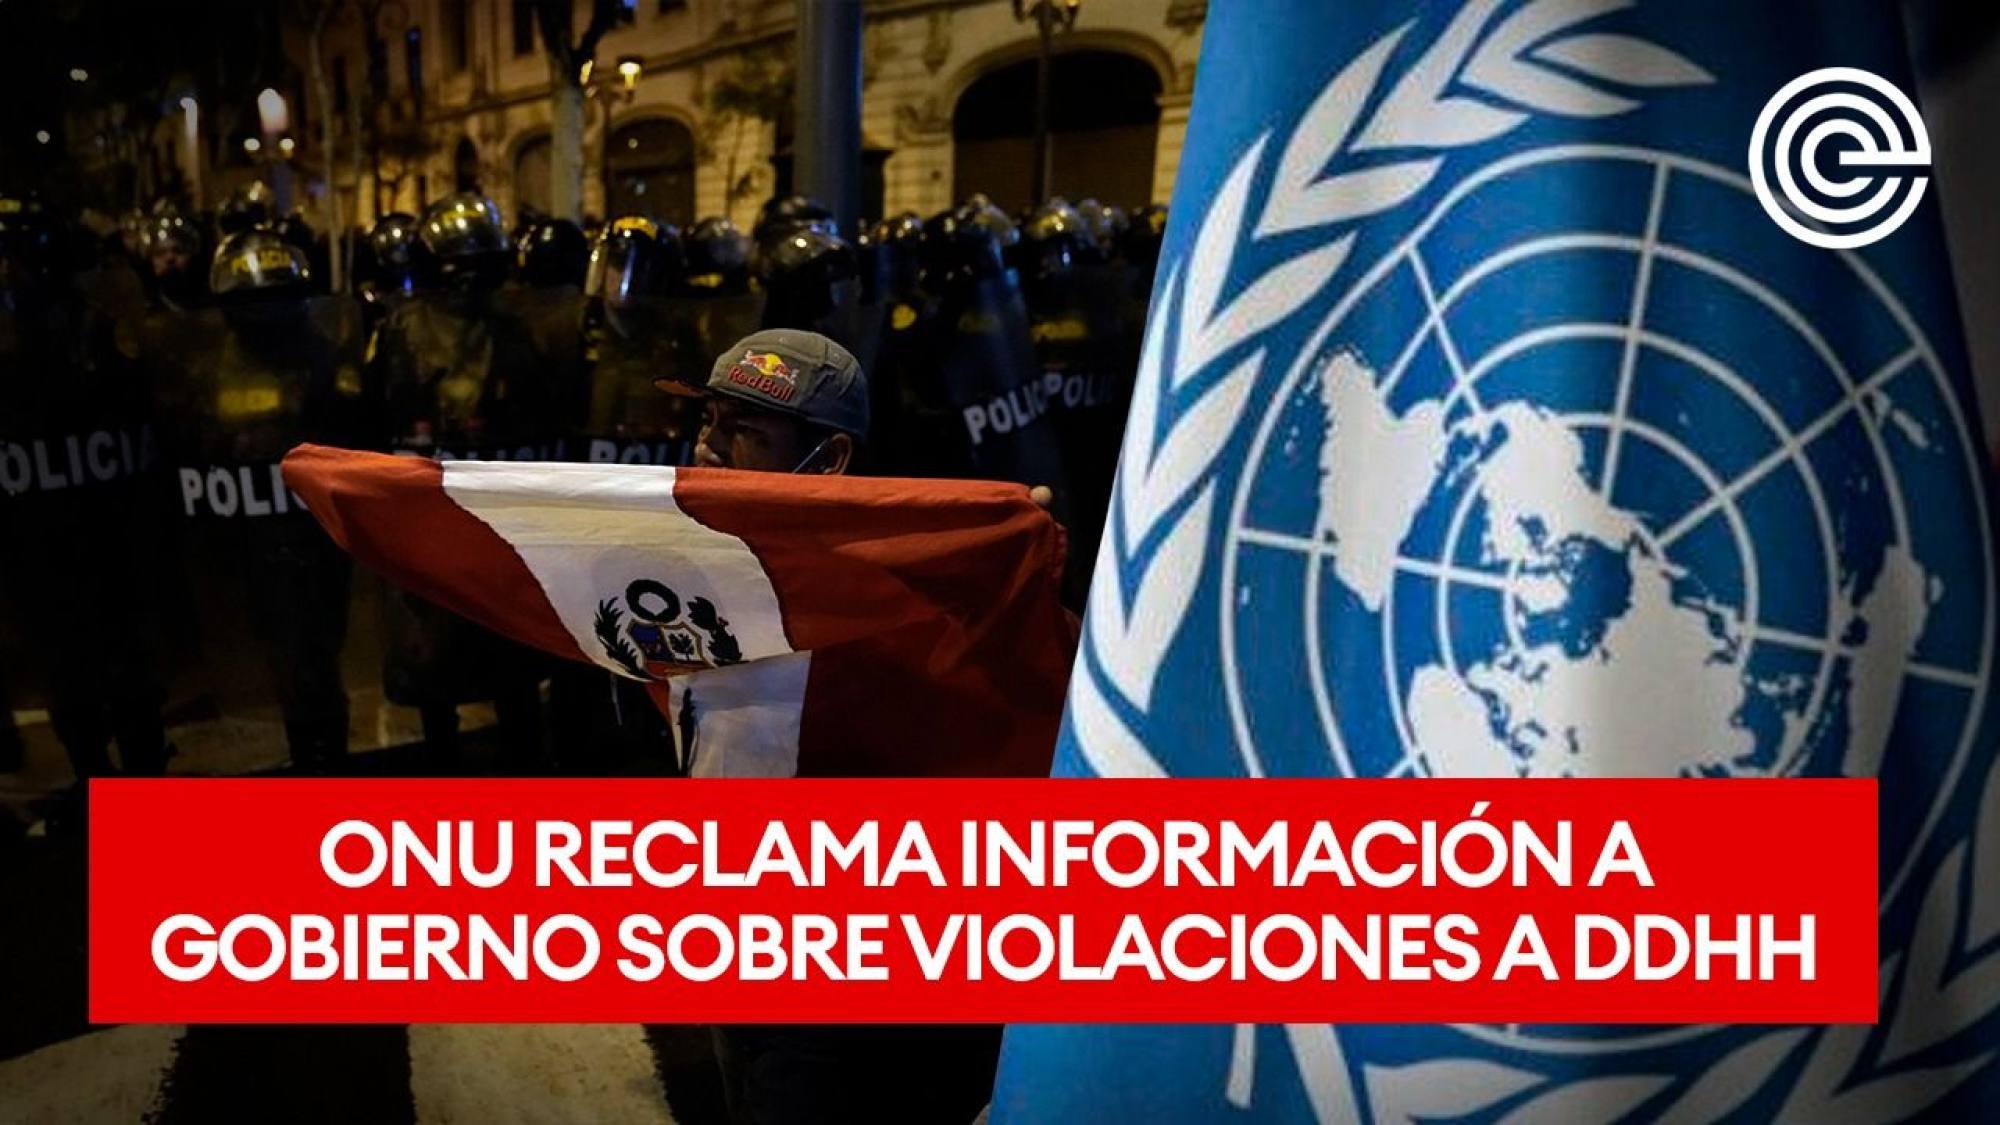 ONU reclama información a gobierno sobre violaciones a DDHH, Epicentro TV